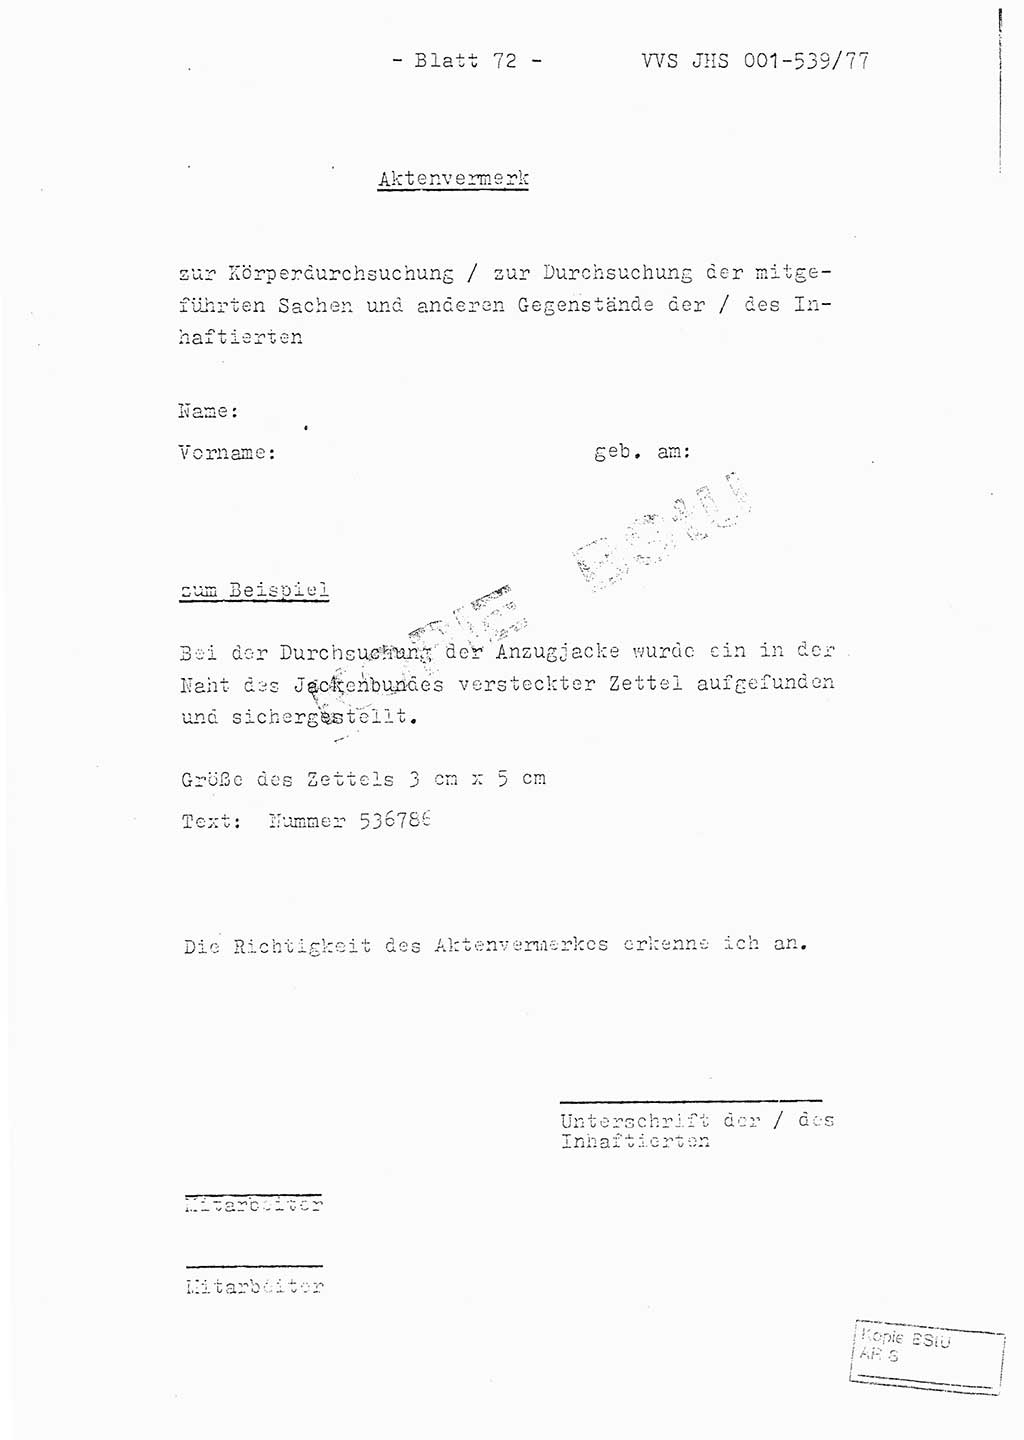 Fachschulabschlußarbeit Hauptmann Dietrich Jung (Abt. ⅩⅣ), Leutnant Klaus Klötzner (Abt. ⅩⅣ), Ministerium für Staatssicherheit (MfS) [Deutsche Demokratische Republik (DDR)], Juristische Hochschule (JHS), Vertrauliche Verschlußsache (VVS) 001-539/77, Potsdam 1978, Seite 72 (FS-Abschl.-Arb. MfS DDR JHS VVS 001-539/77 1978, S. 72)